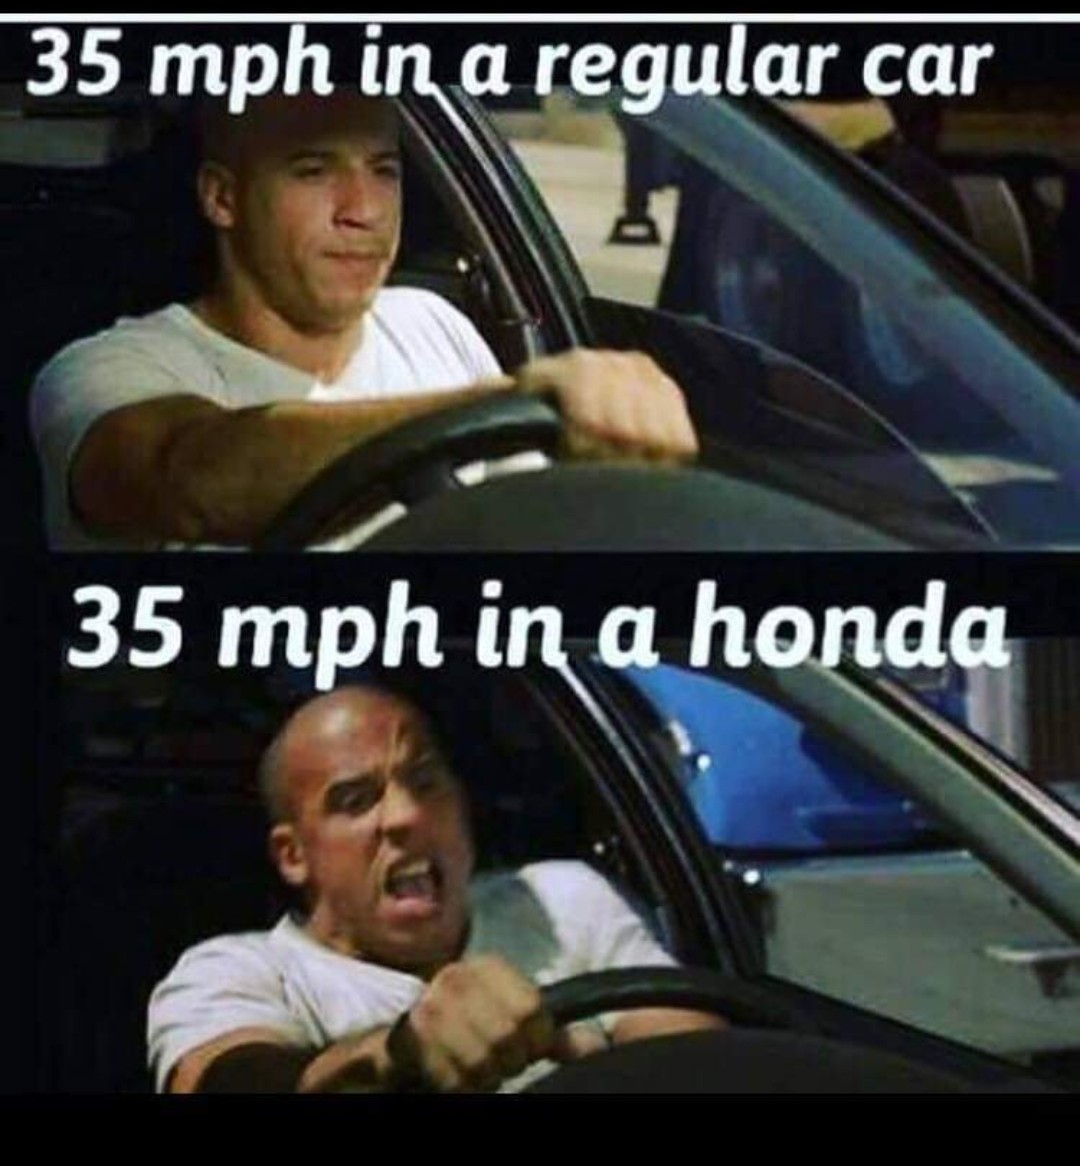 Quand tu roule en Honda - meme